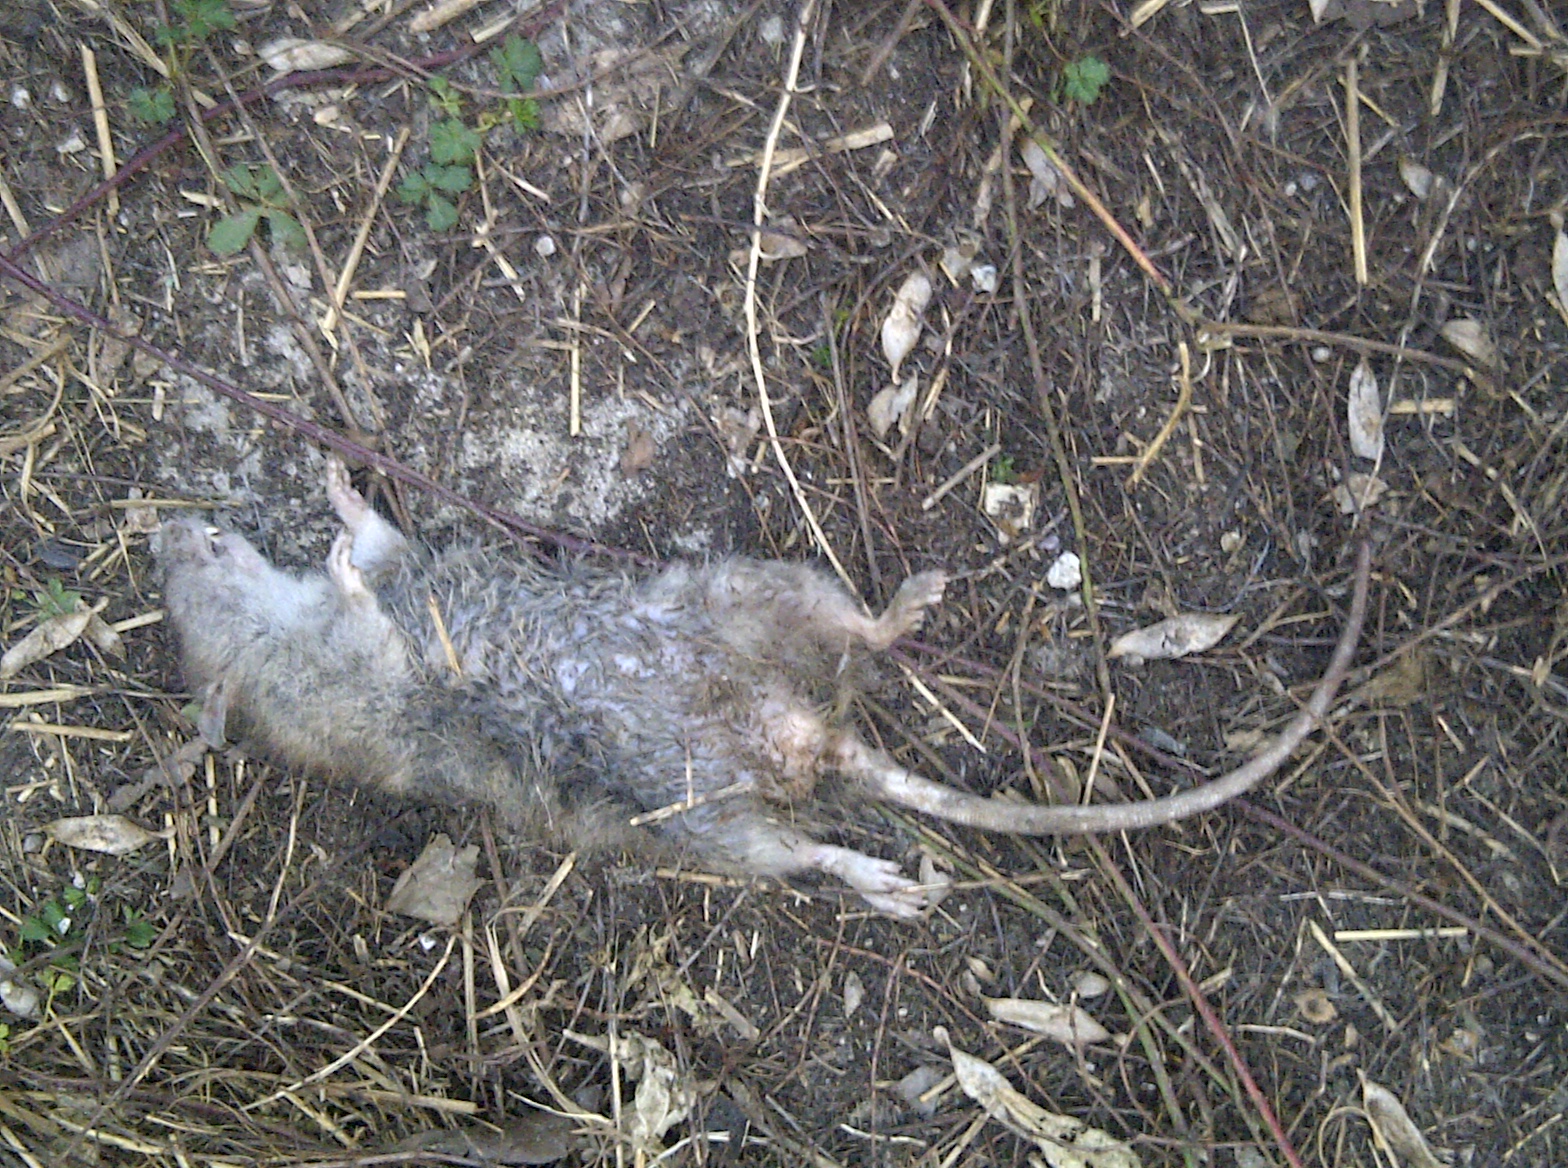 il topo ammazzato lasciato davanti alla residenza (dopo la rimozione dal sentiero di accesso)